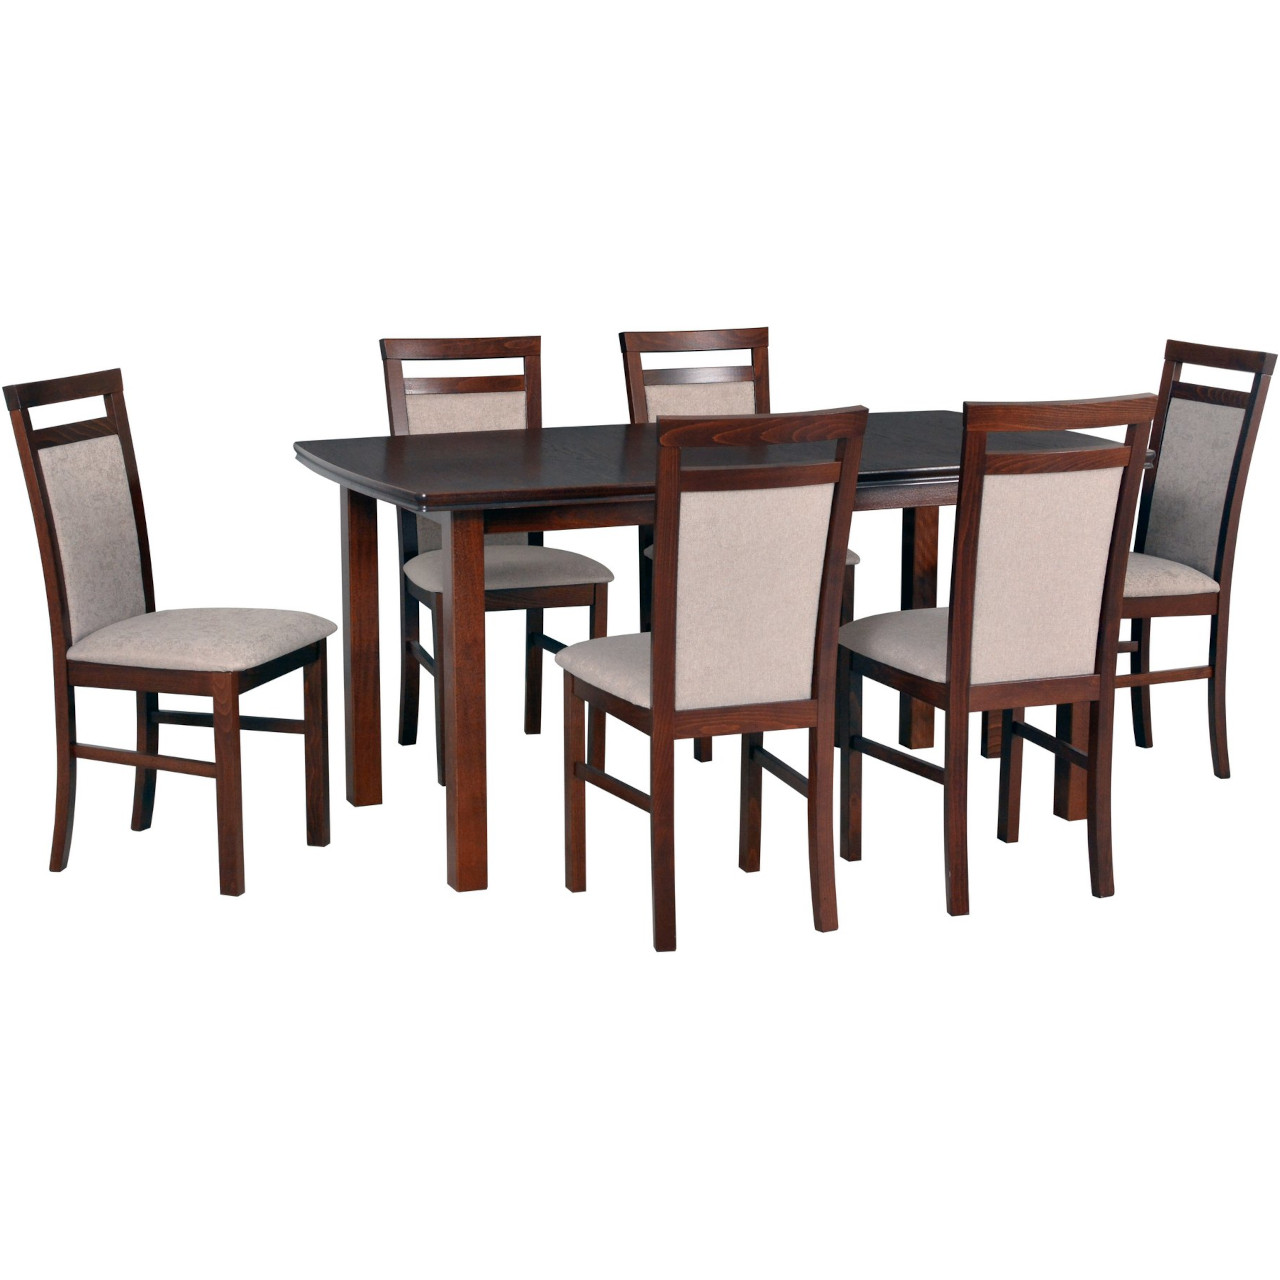 Stůl KENT 2 dubová dýha / ořech + židle MILANO 5 (6 ks) ořech / 5B